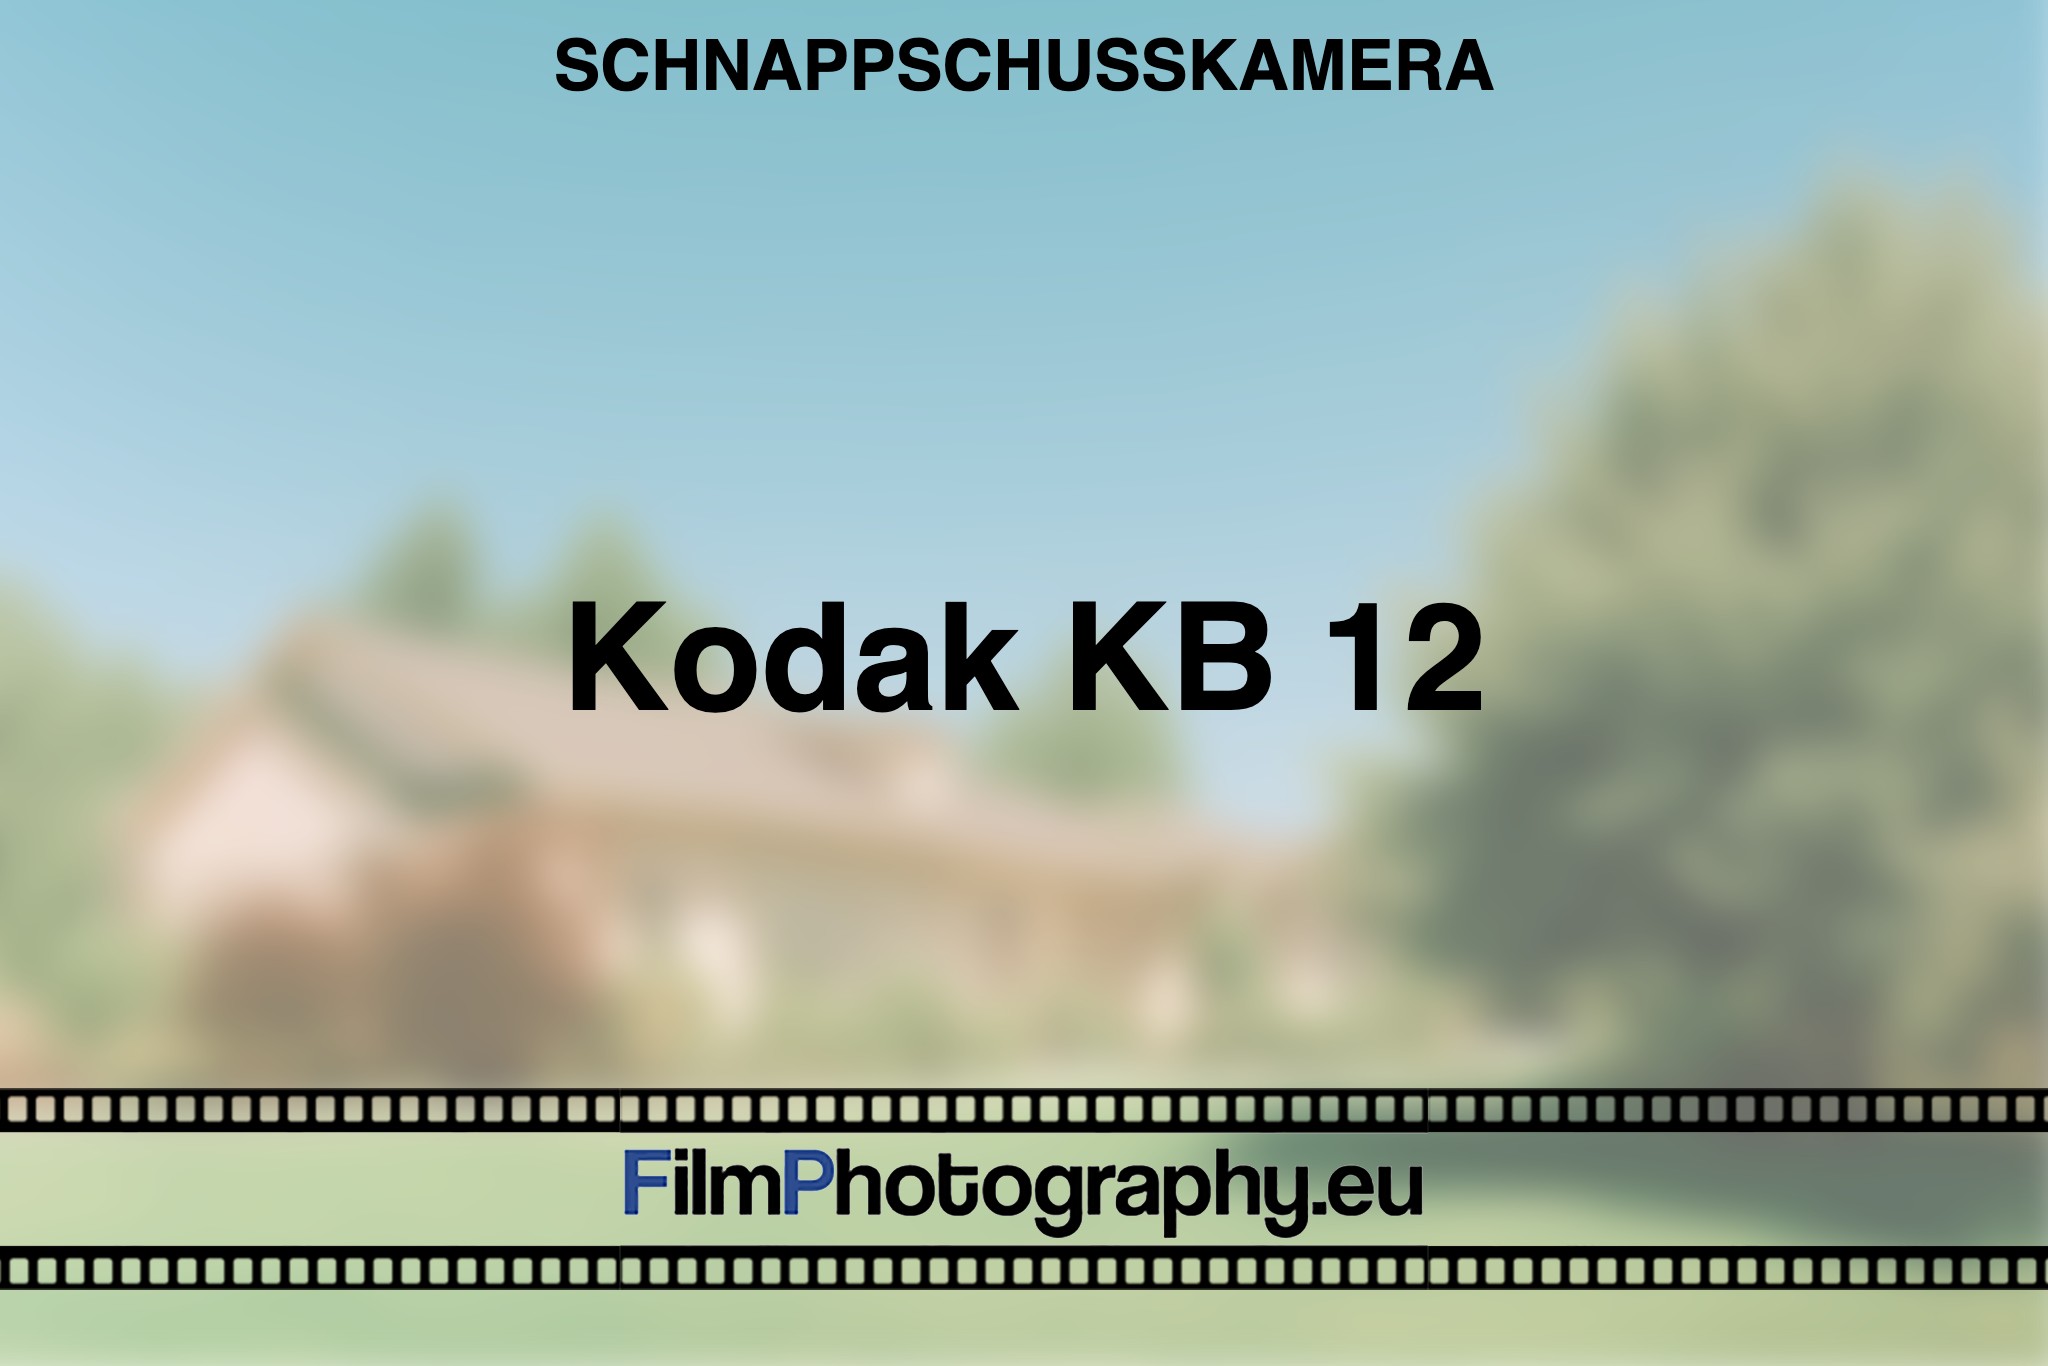 kodak-kb-12-schnappschusskamera-bnv